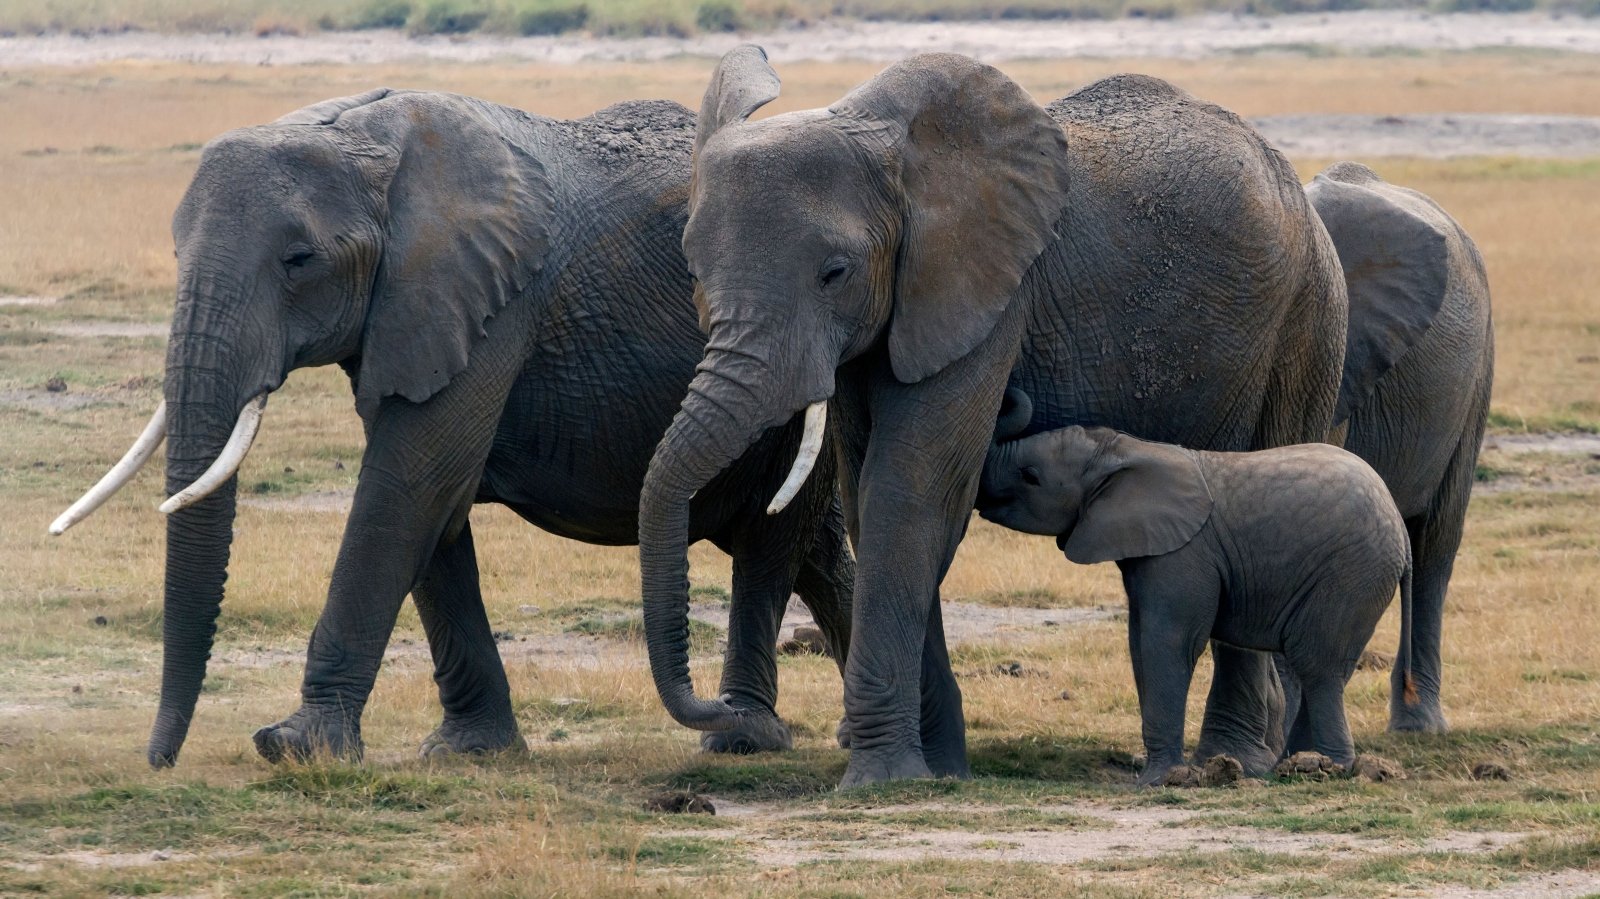 Kenyan elephants with baby